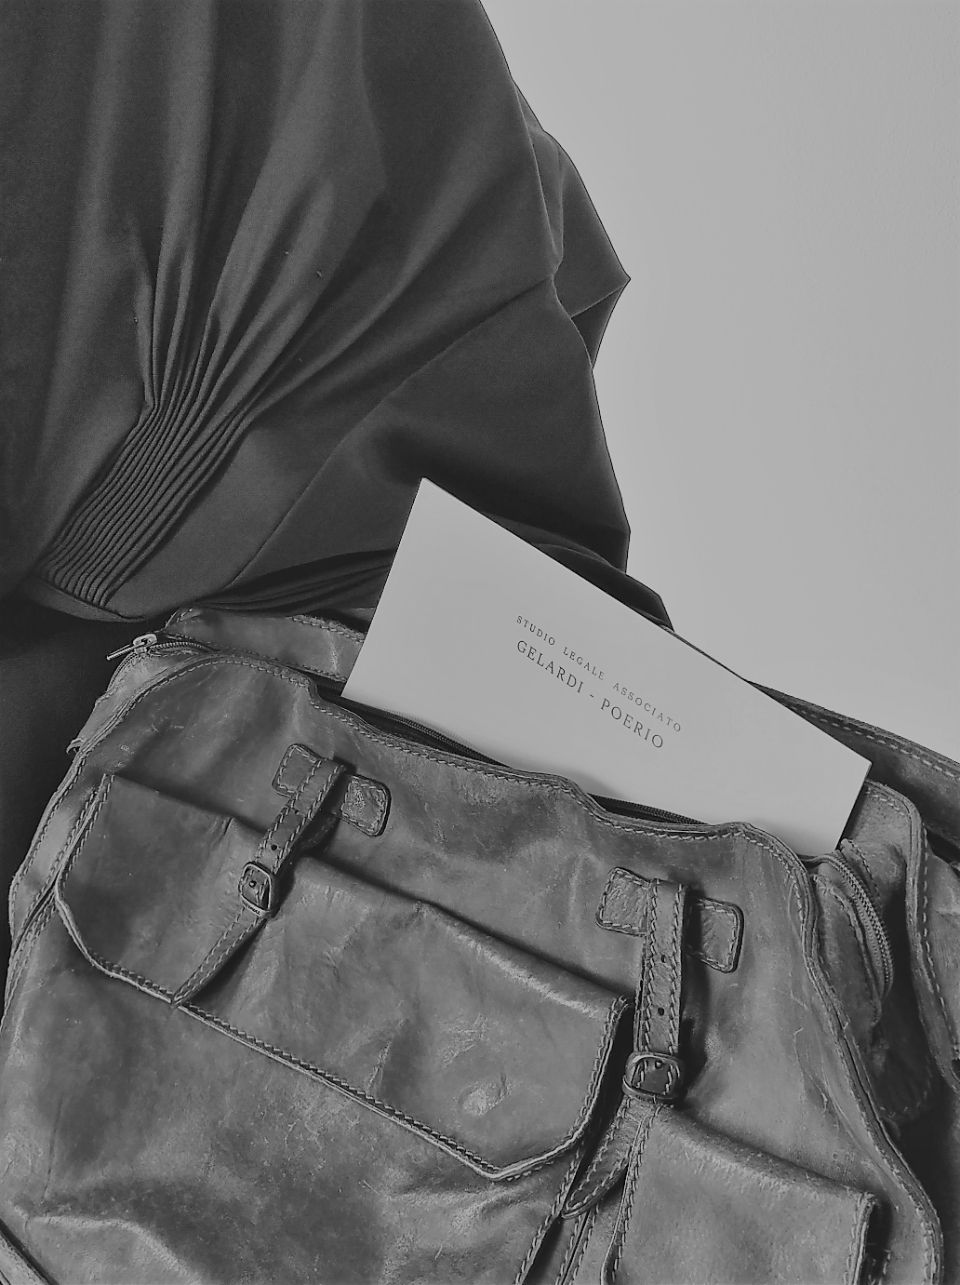 Foto in bianco e nero di una borsa con all'interno dei documenti